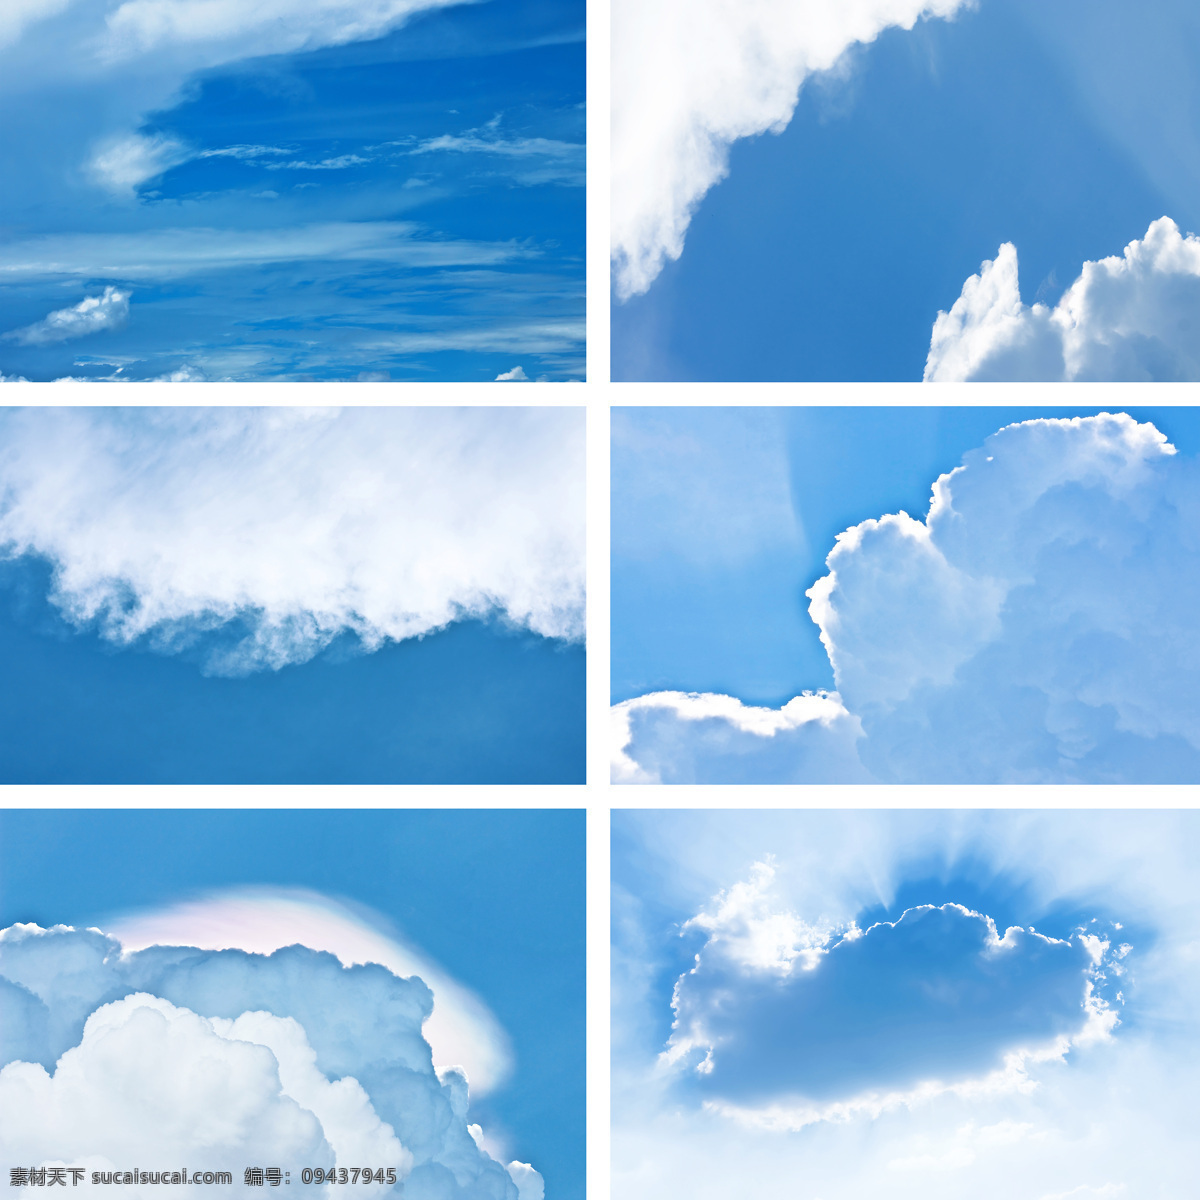 蓝天 白云 图片集 美景 自然风景 天空 蓝色 壮观 云层 阳光 天空云彩 自然景观 白色